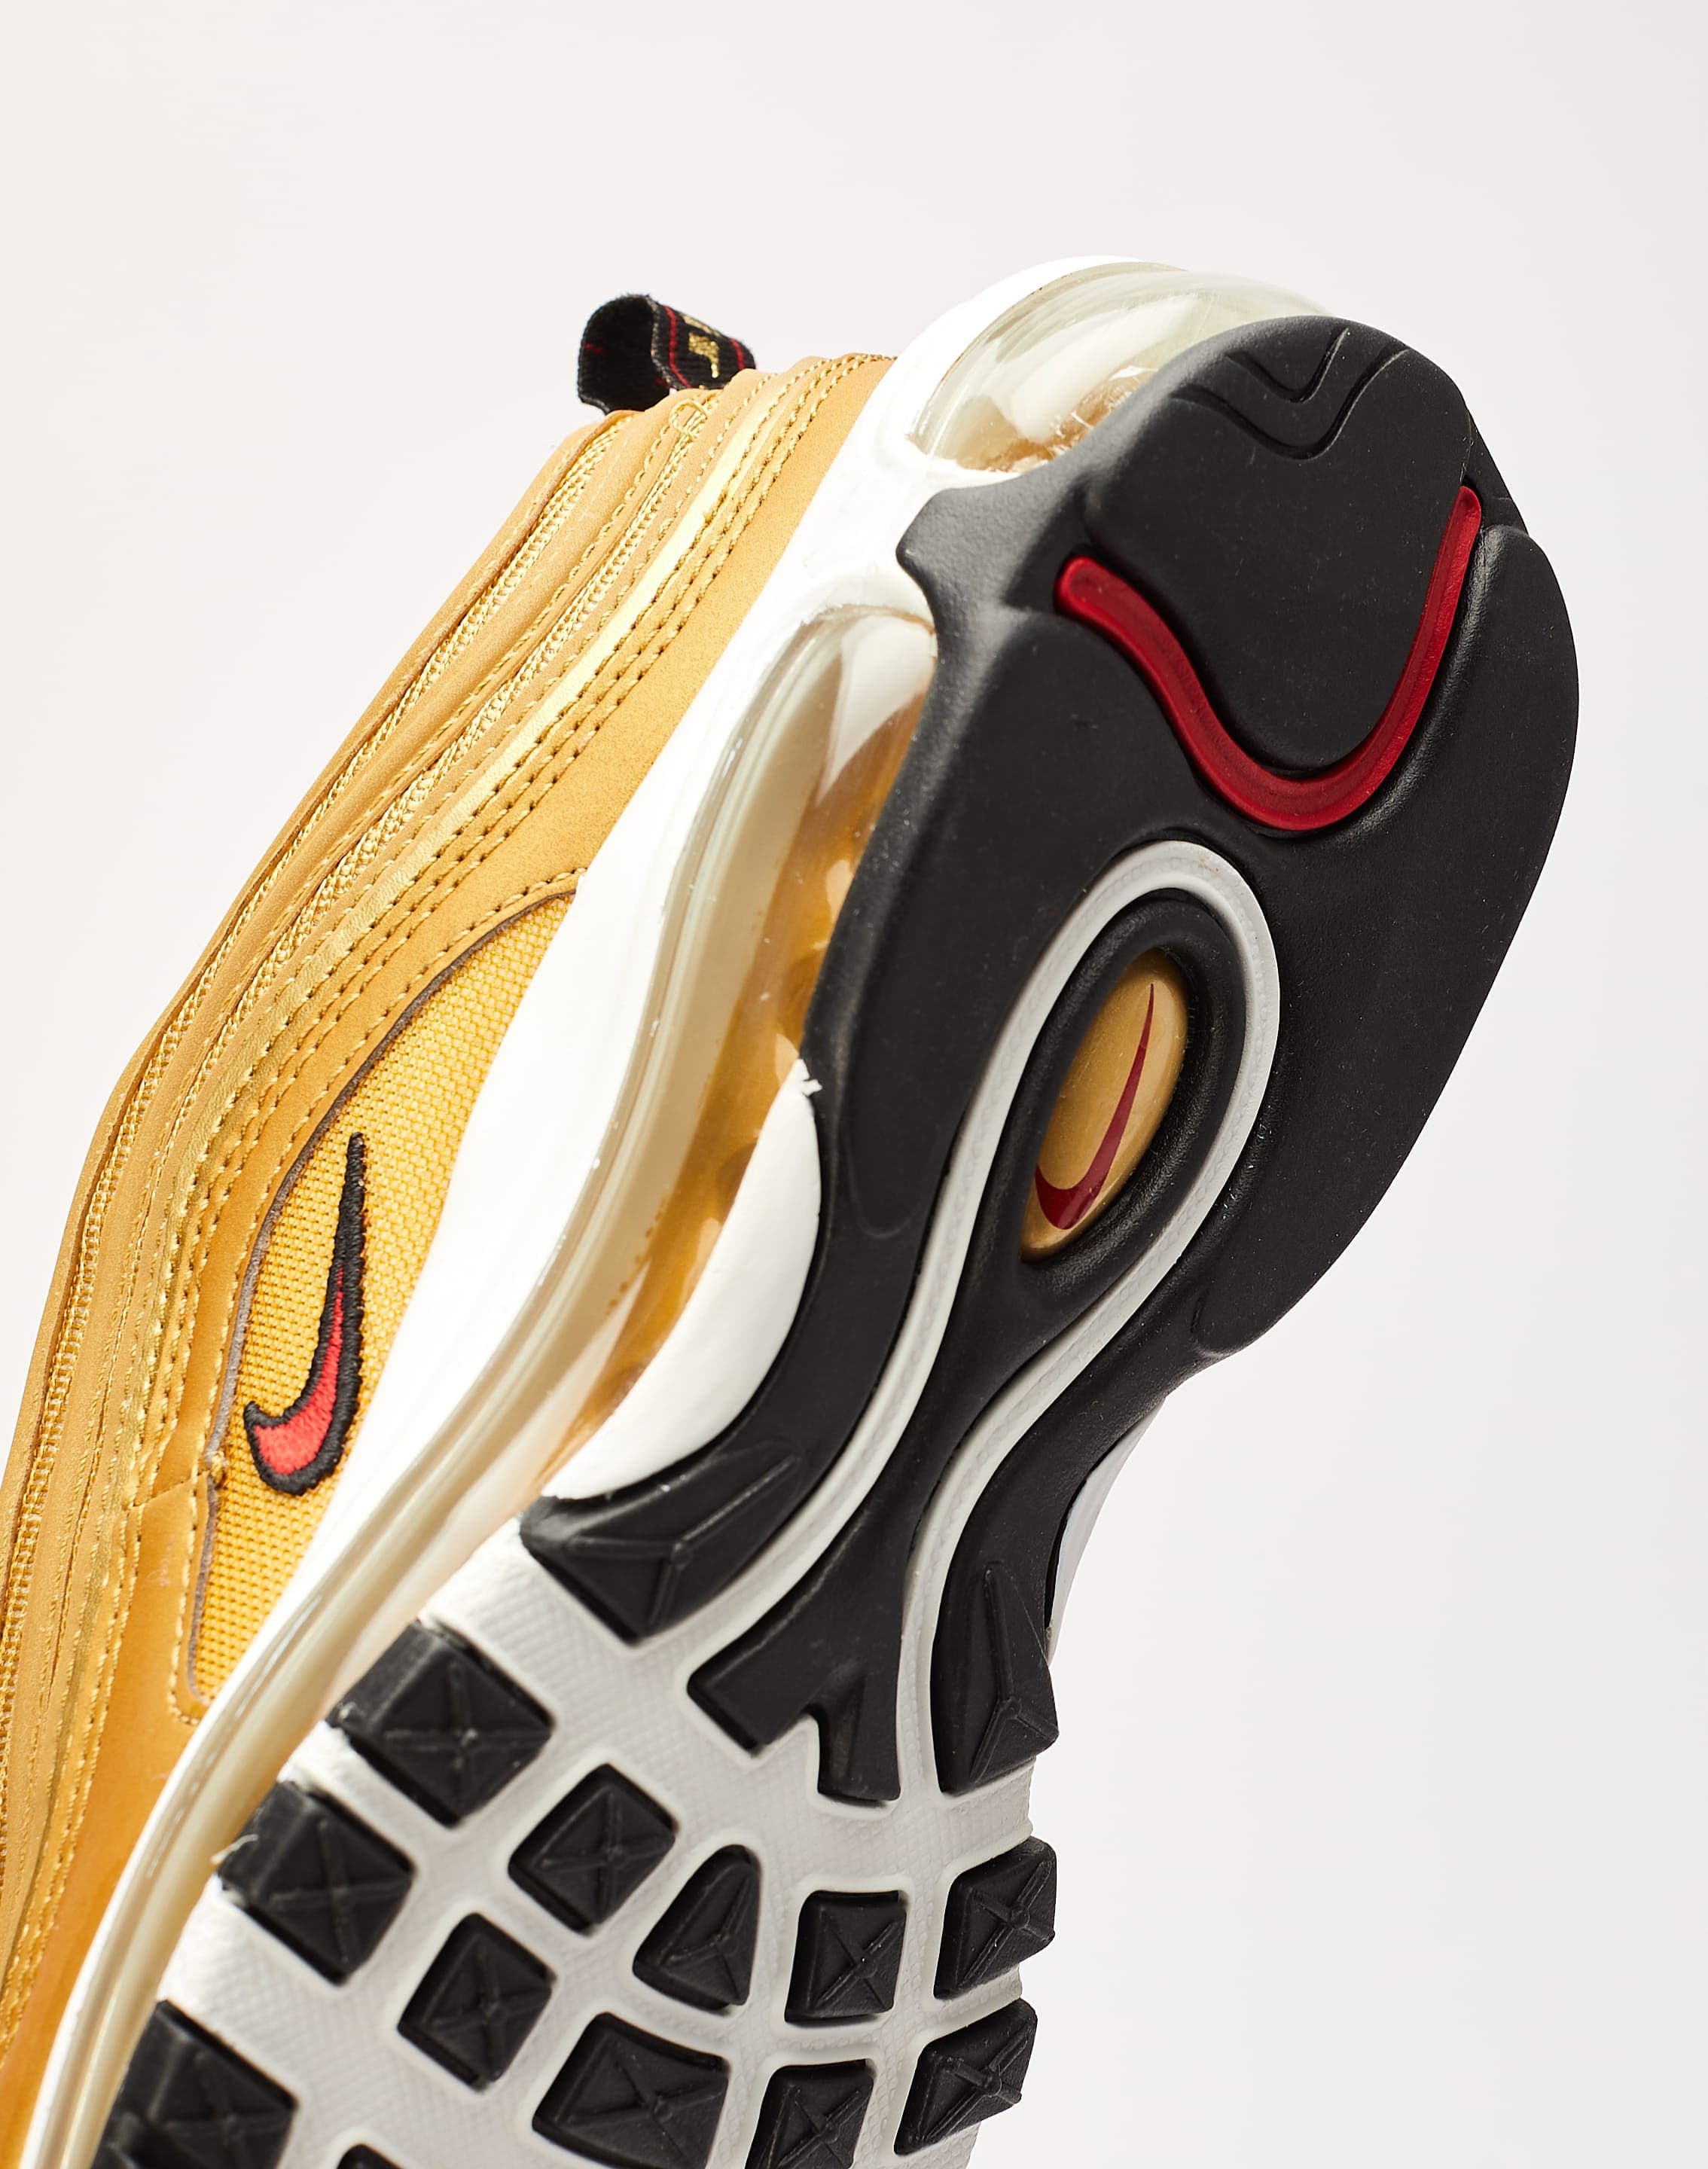 Nike Air Max 97 “Metallic Gold/Black” DX0137-700